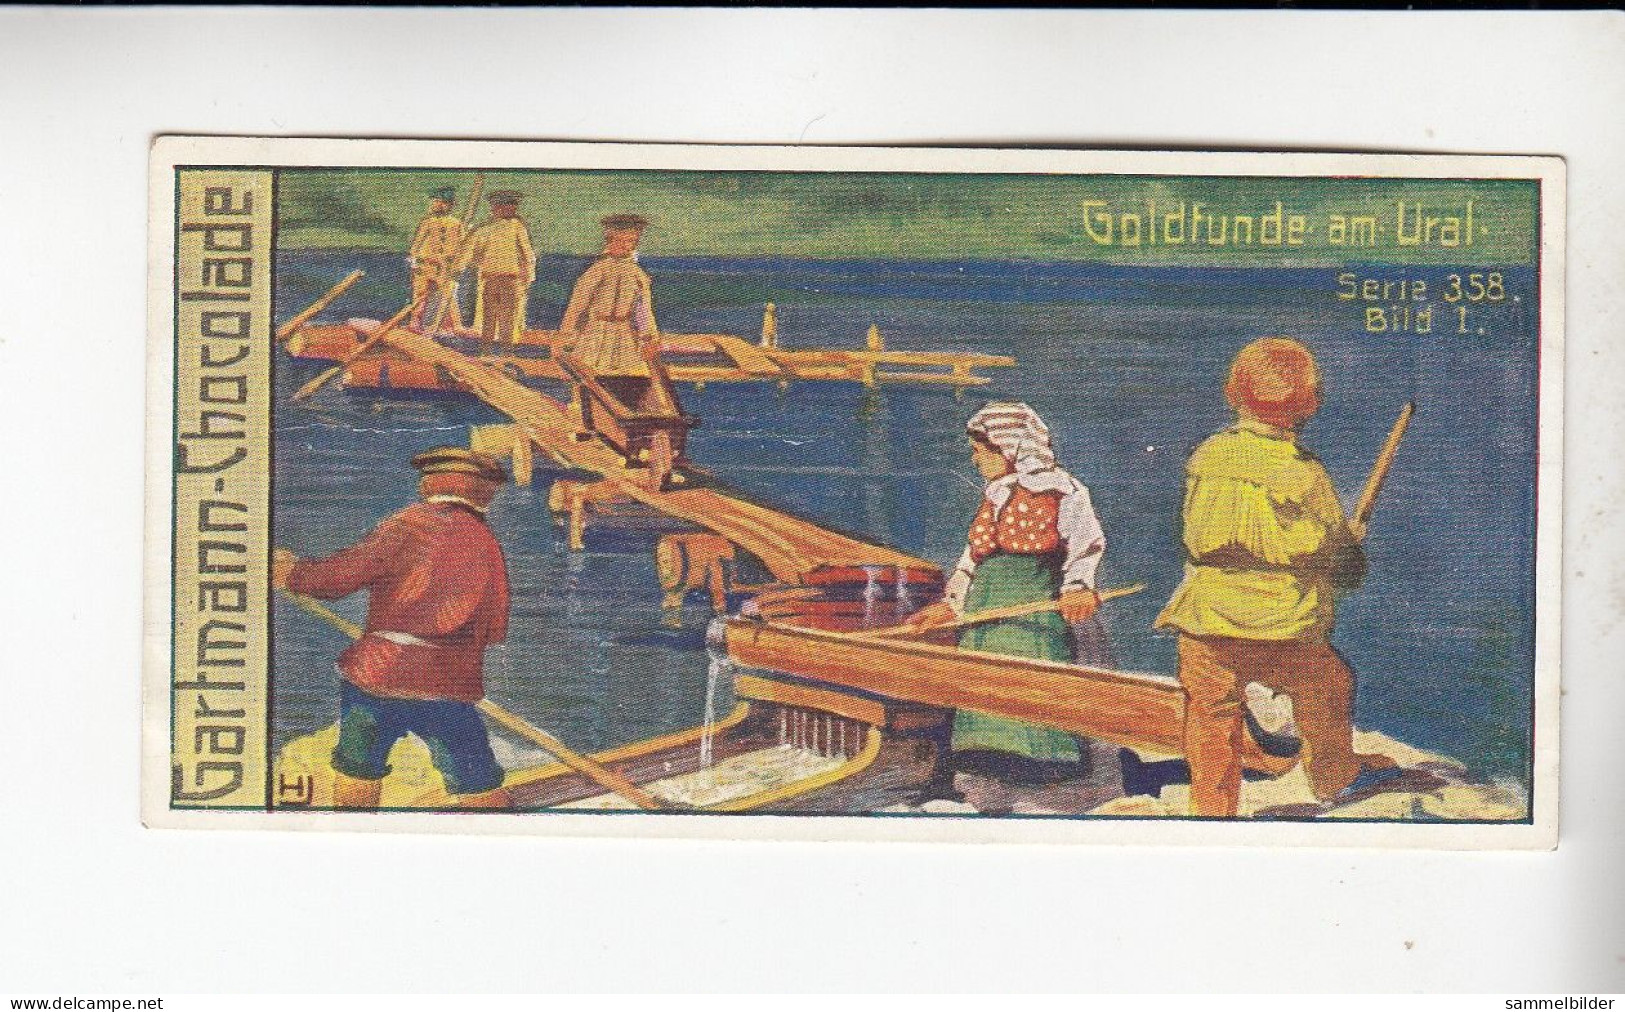 Gartmann Goldgewinnung  Goldfunde Am Ural    Serie 358 #1 Von 1912 - Other & Unclassified